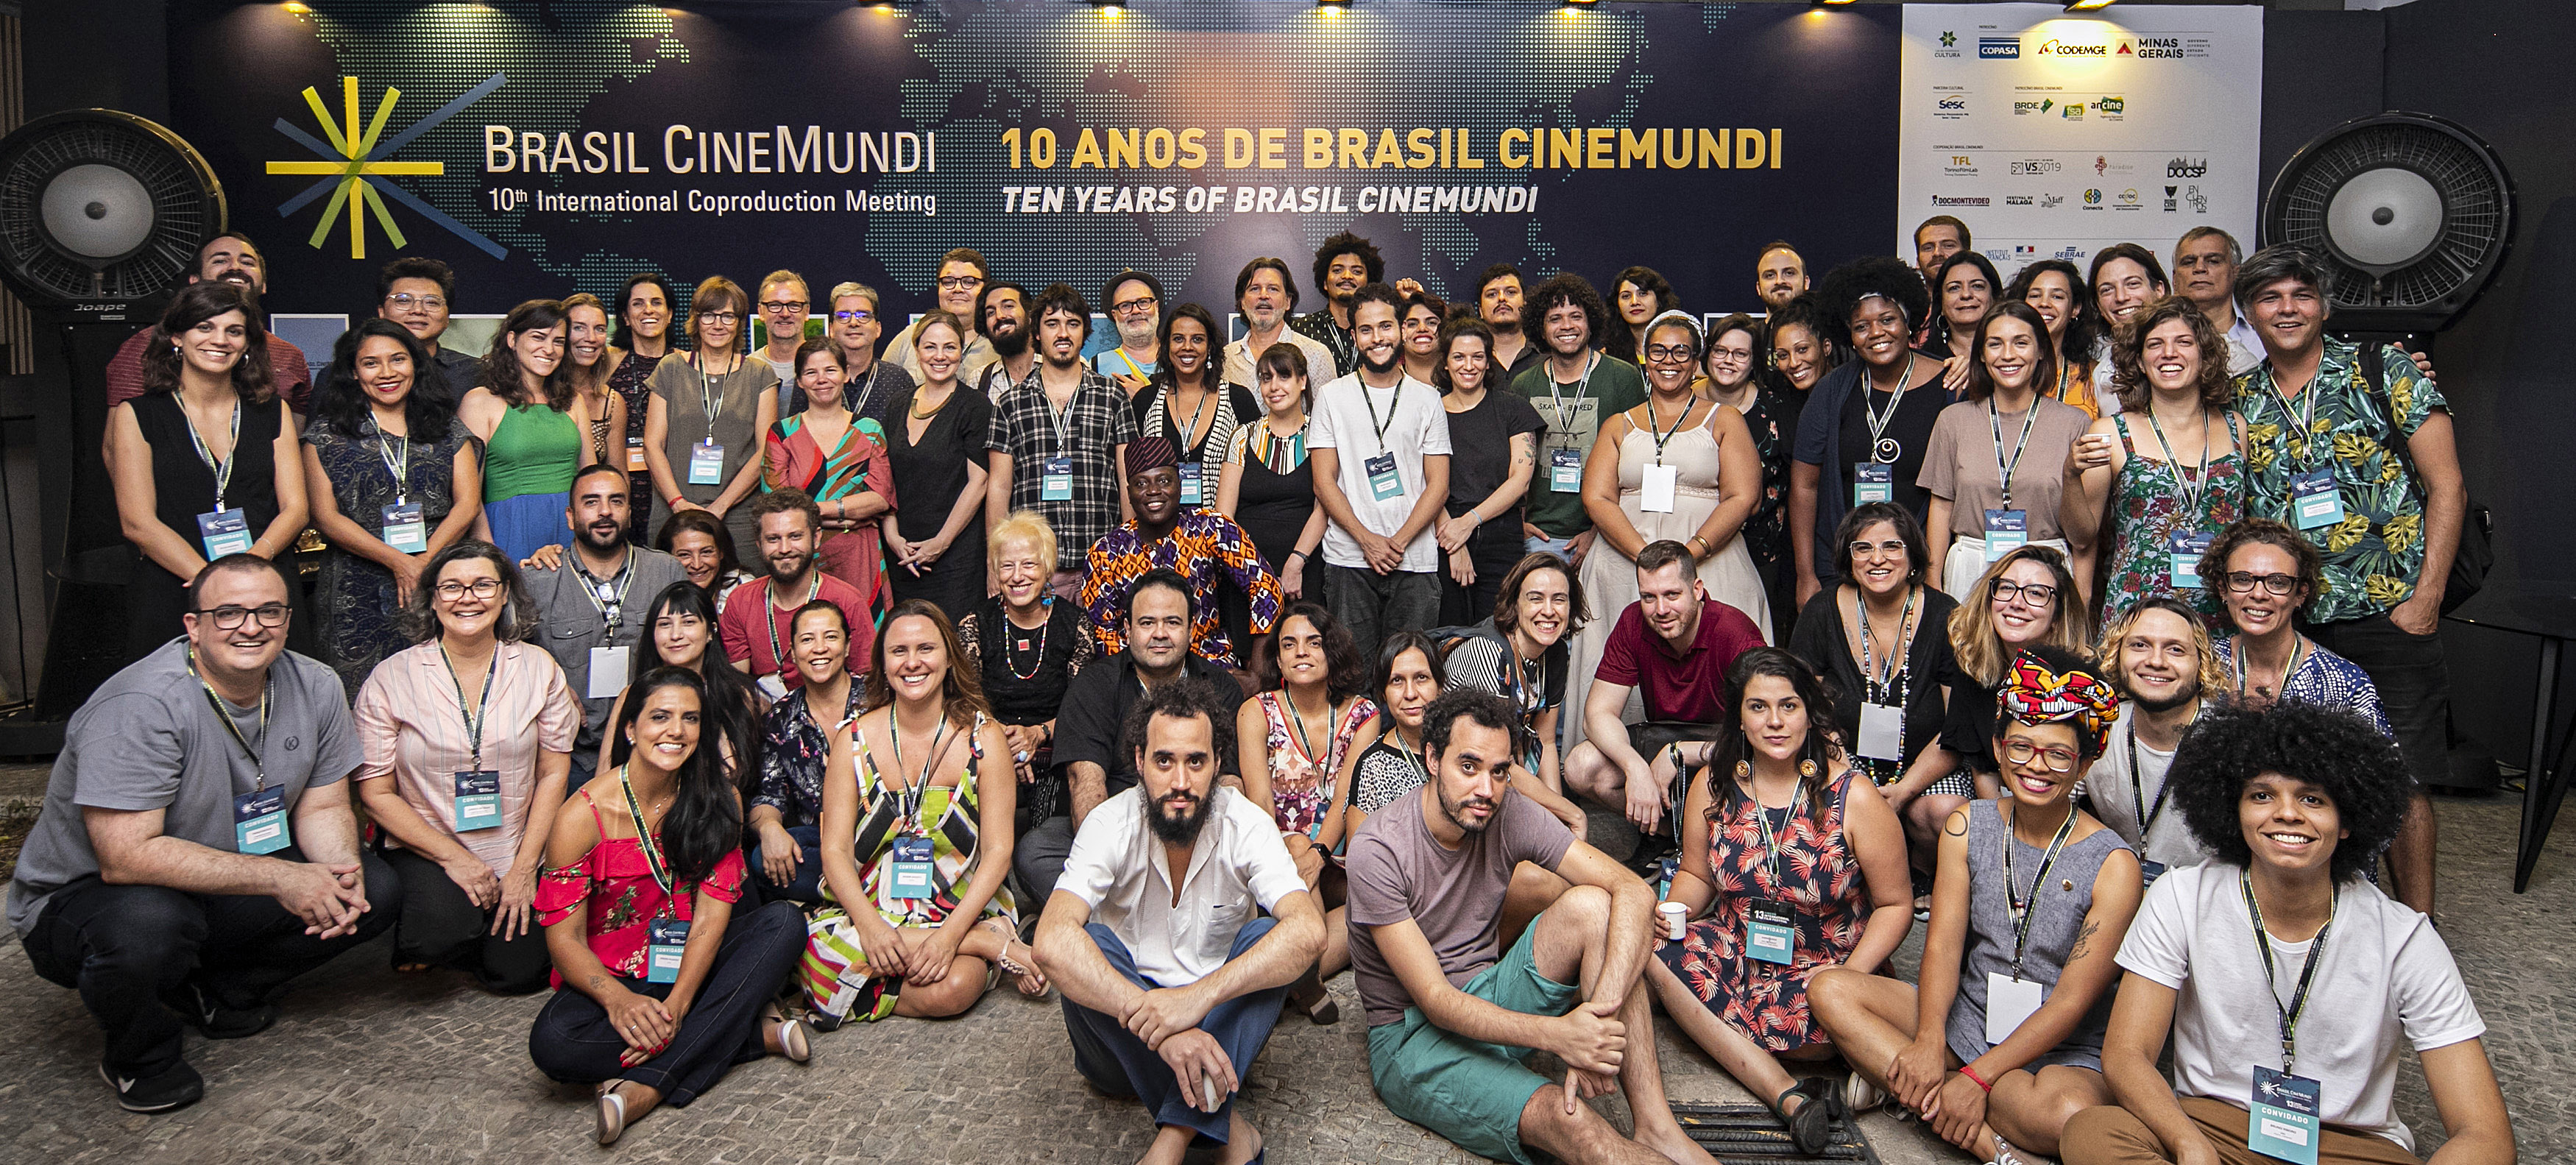 CineBH promove a reflexão sobre a internacionalização do cinema brasileiro e gera 800 empregos